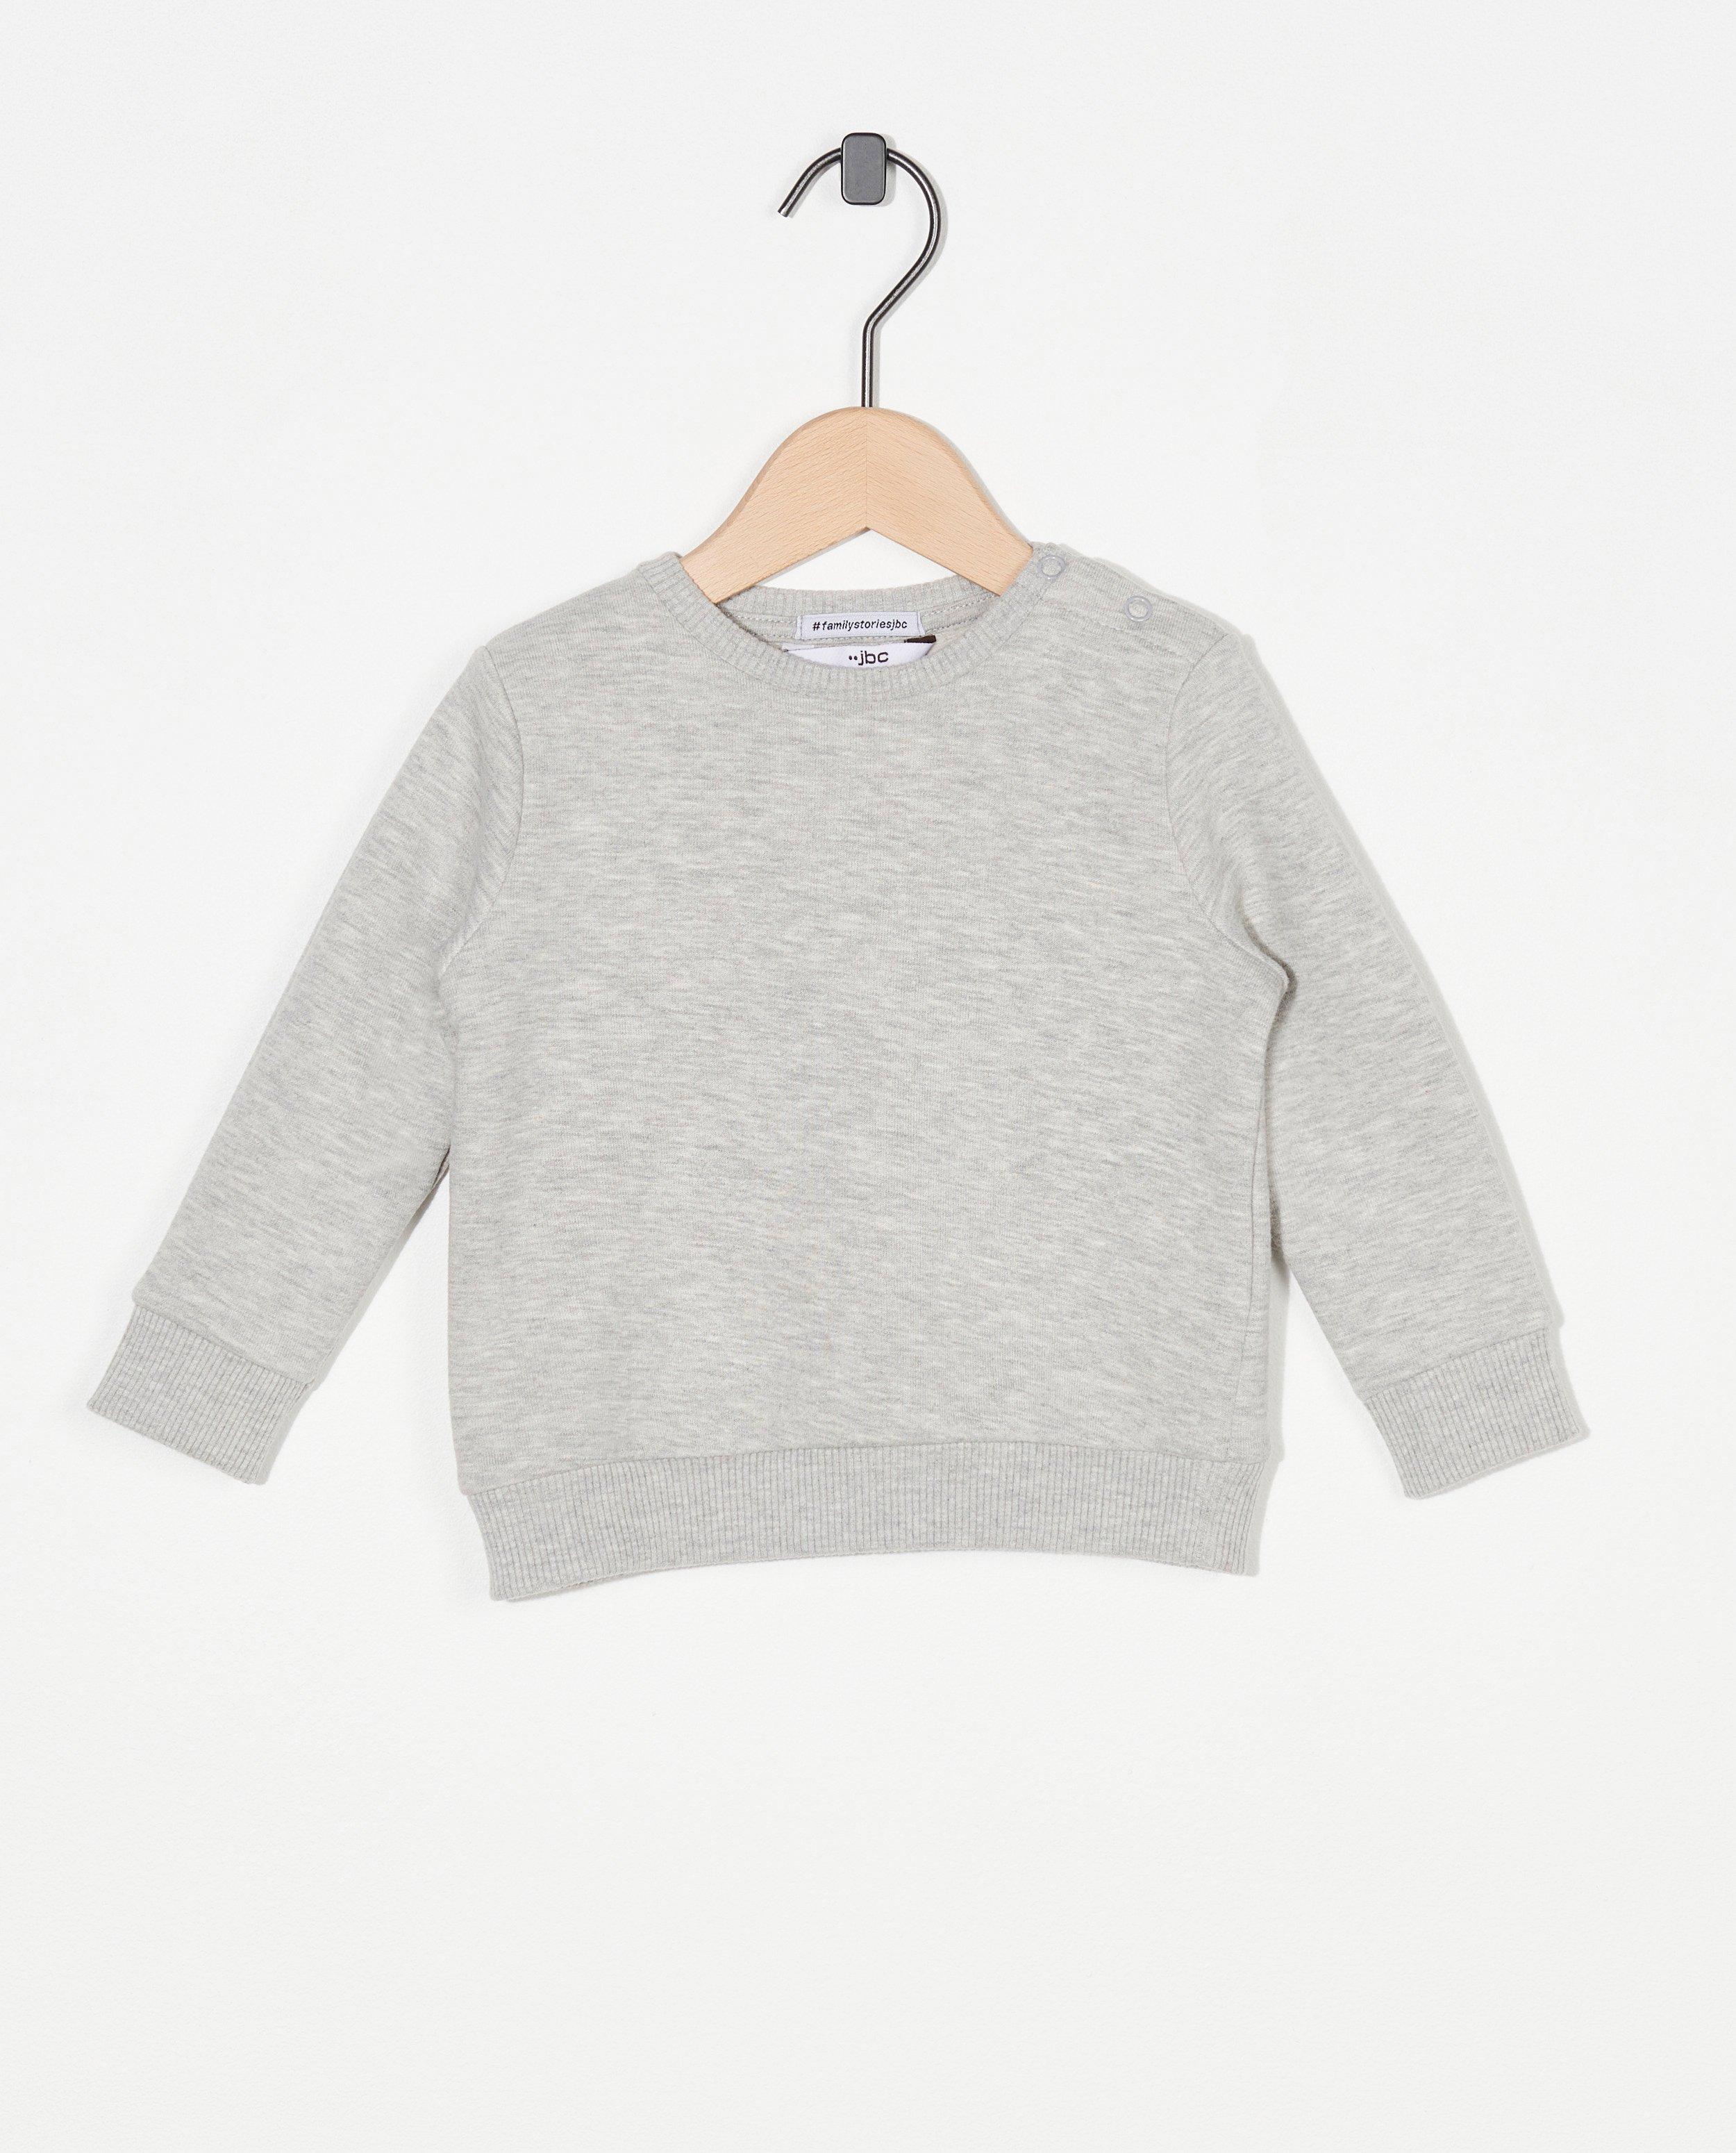 Lichtgrijze sweater, baby - lettersweater - JBC